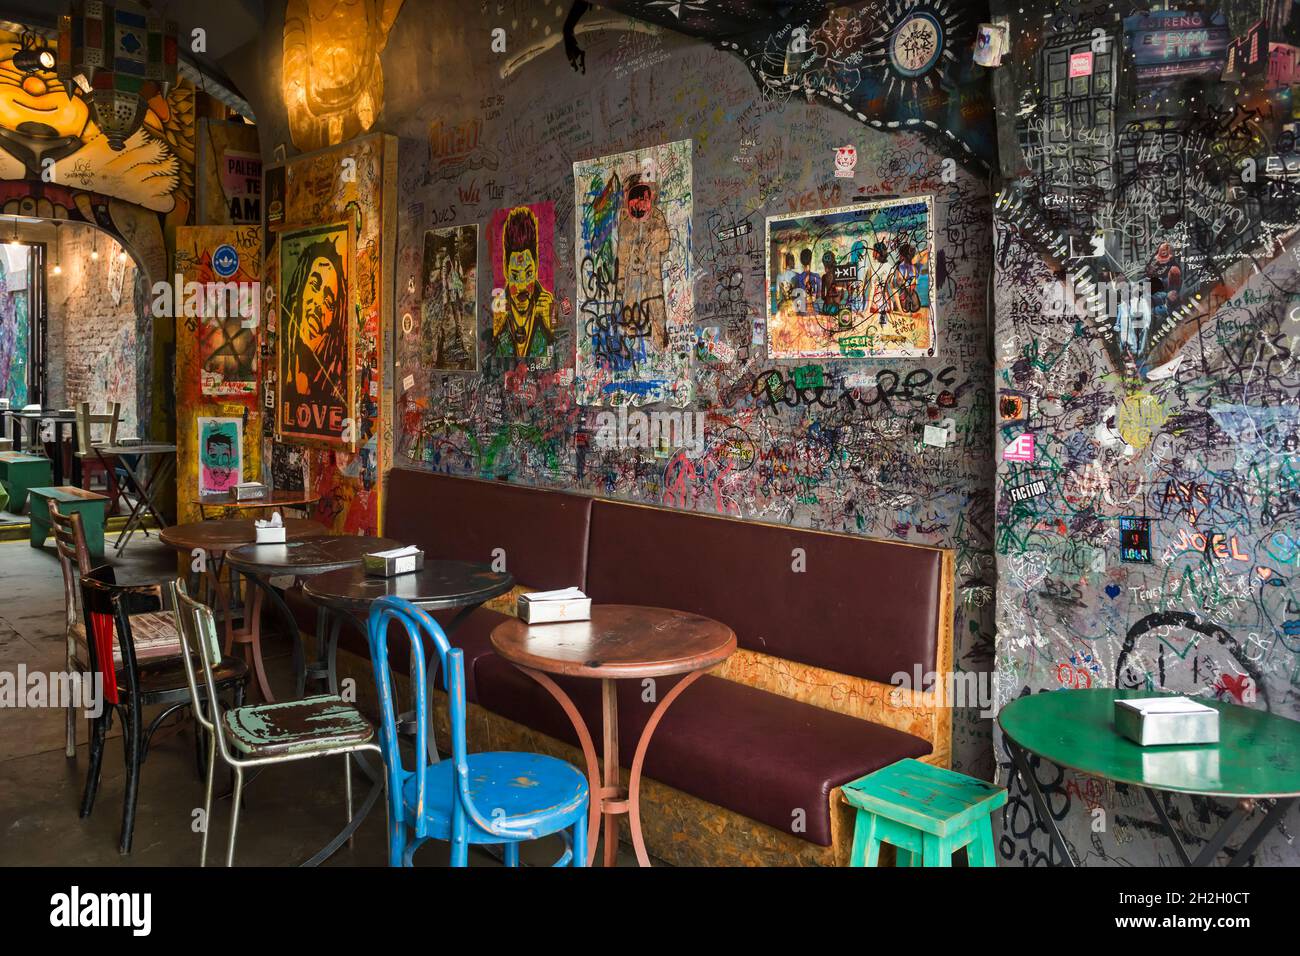 Vue horizontale sur l'intérieur d'un bar hippie dans la rue Jorge Luís Borges, dans le quartier de Palerme, Buenos Aires, Argentine Banque D'Images